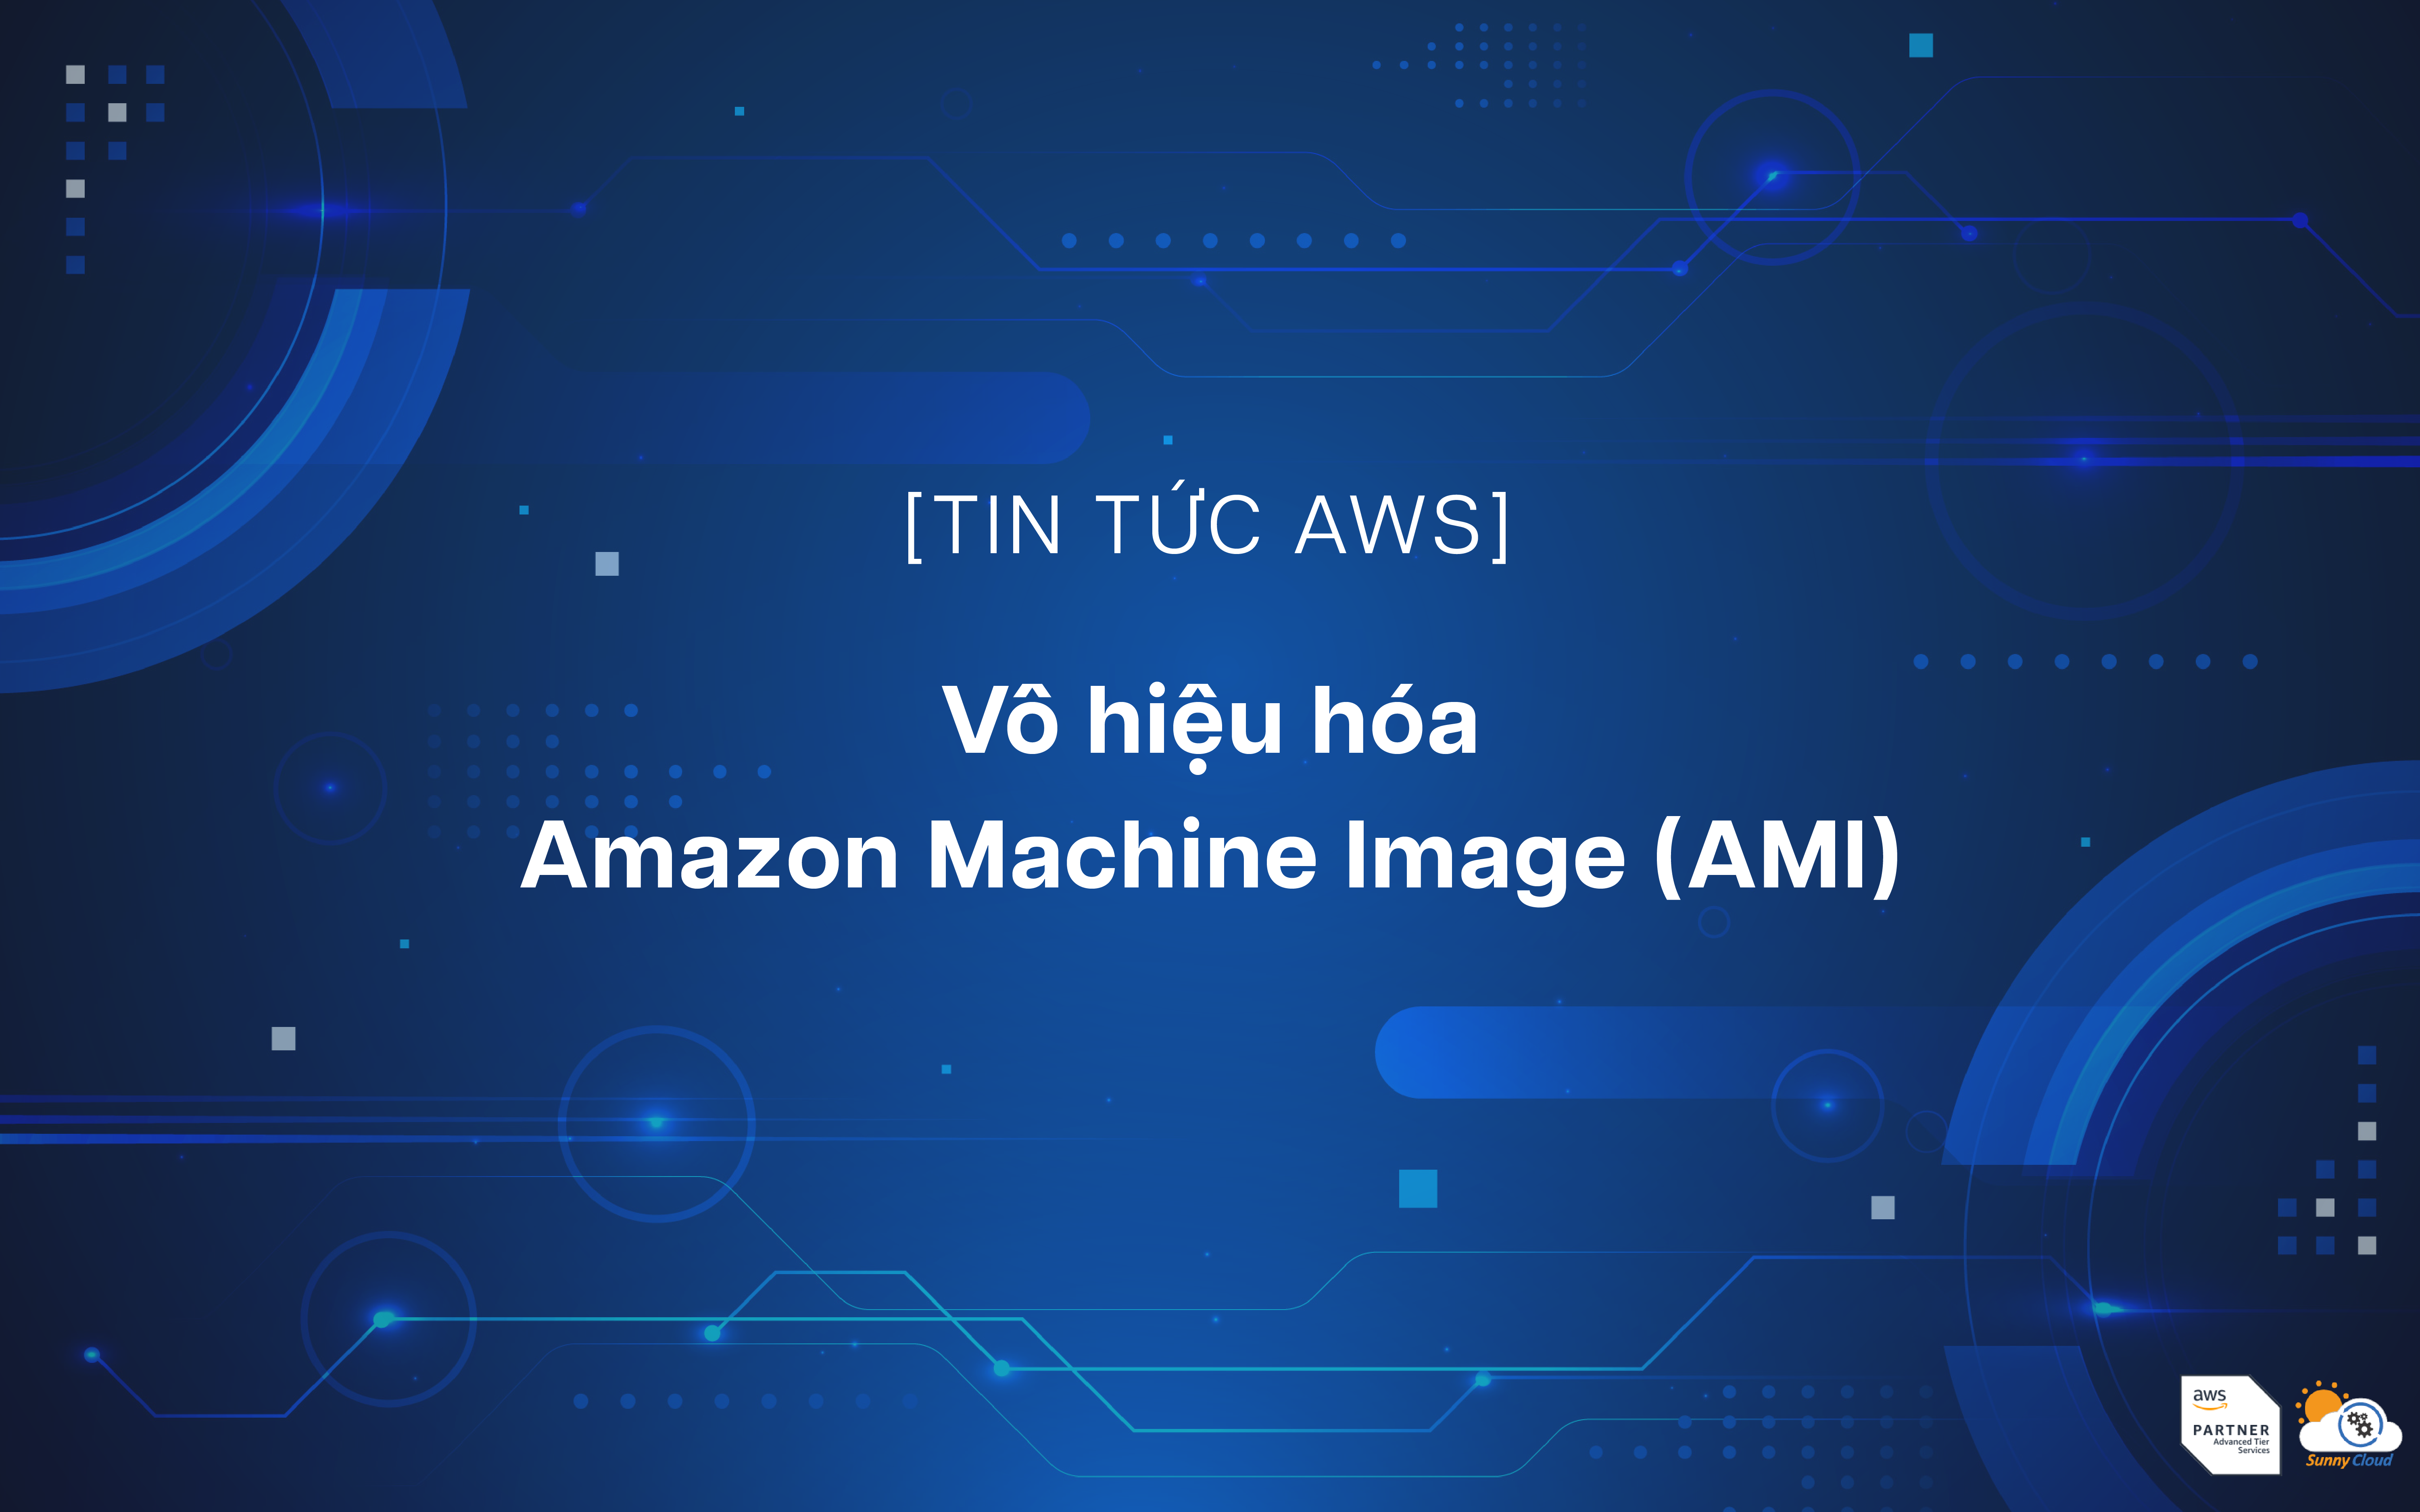 Hỗ trợ vô hiệu hóa AMI (Amazon Machine Image)